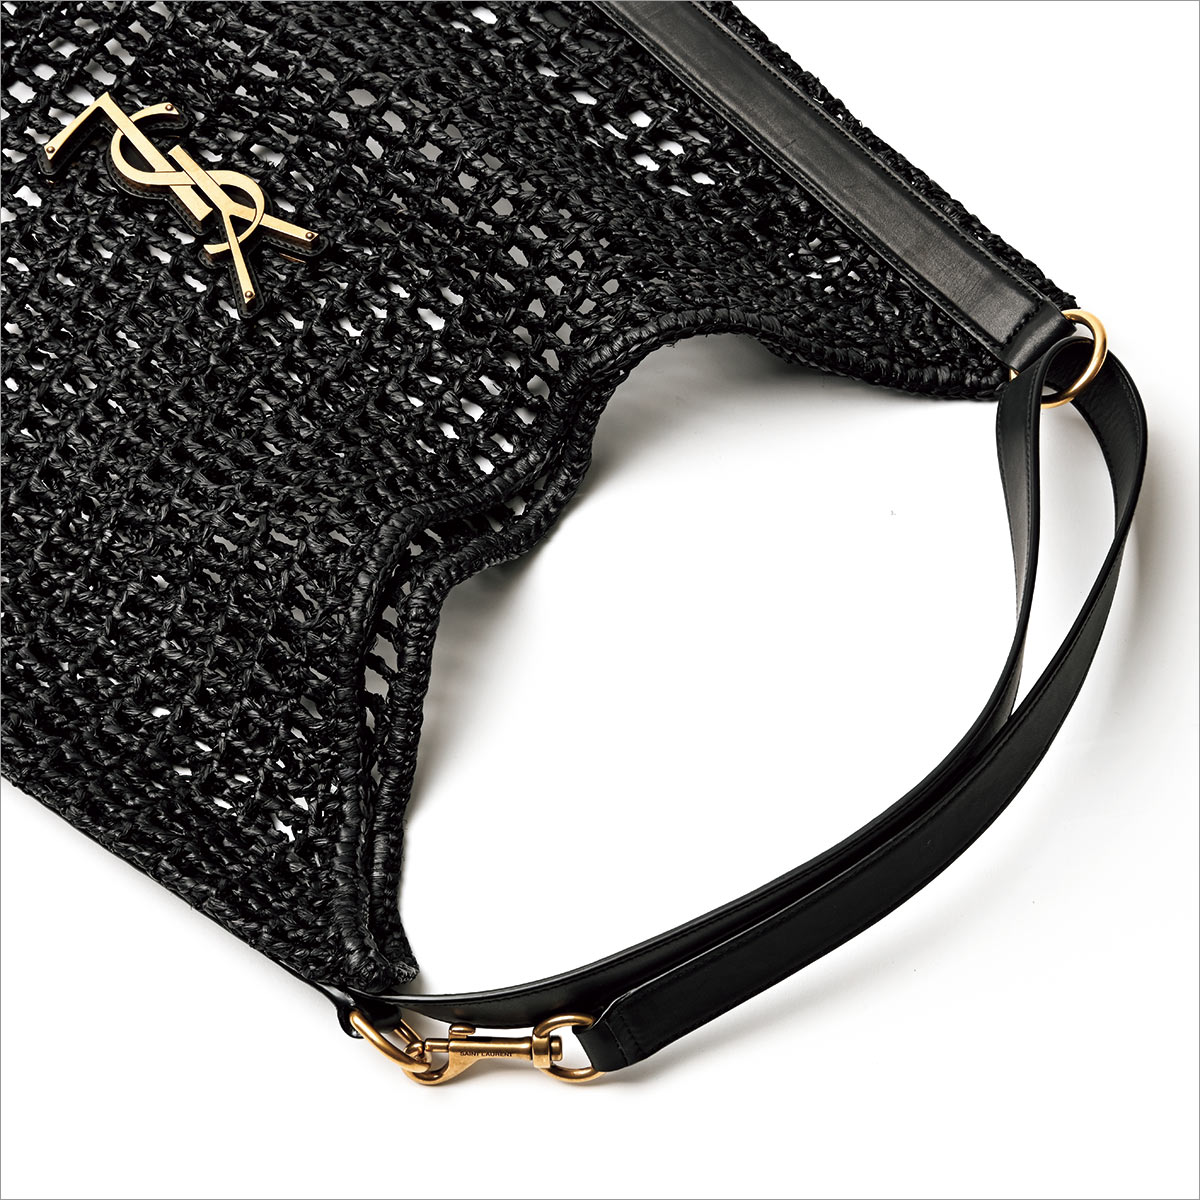 〈サンローラン〉のラフィア素材のメッシュバッグは、軽やかメッシュにゴールドロゴが映える！